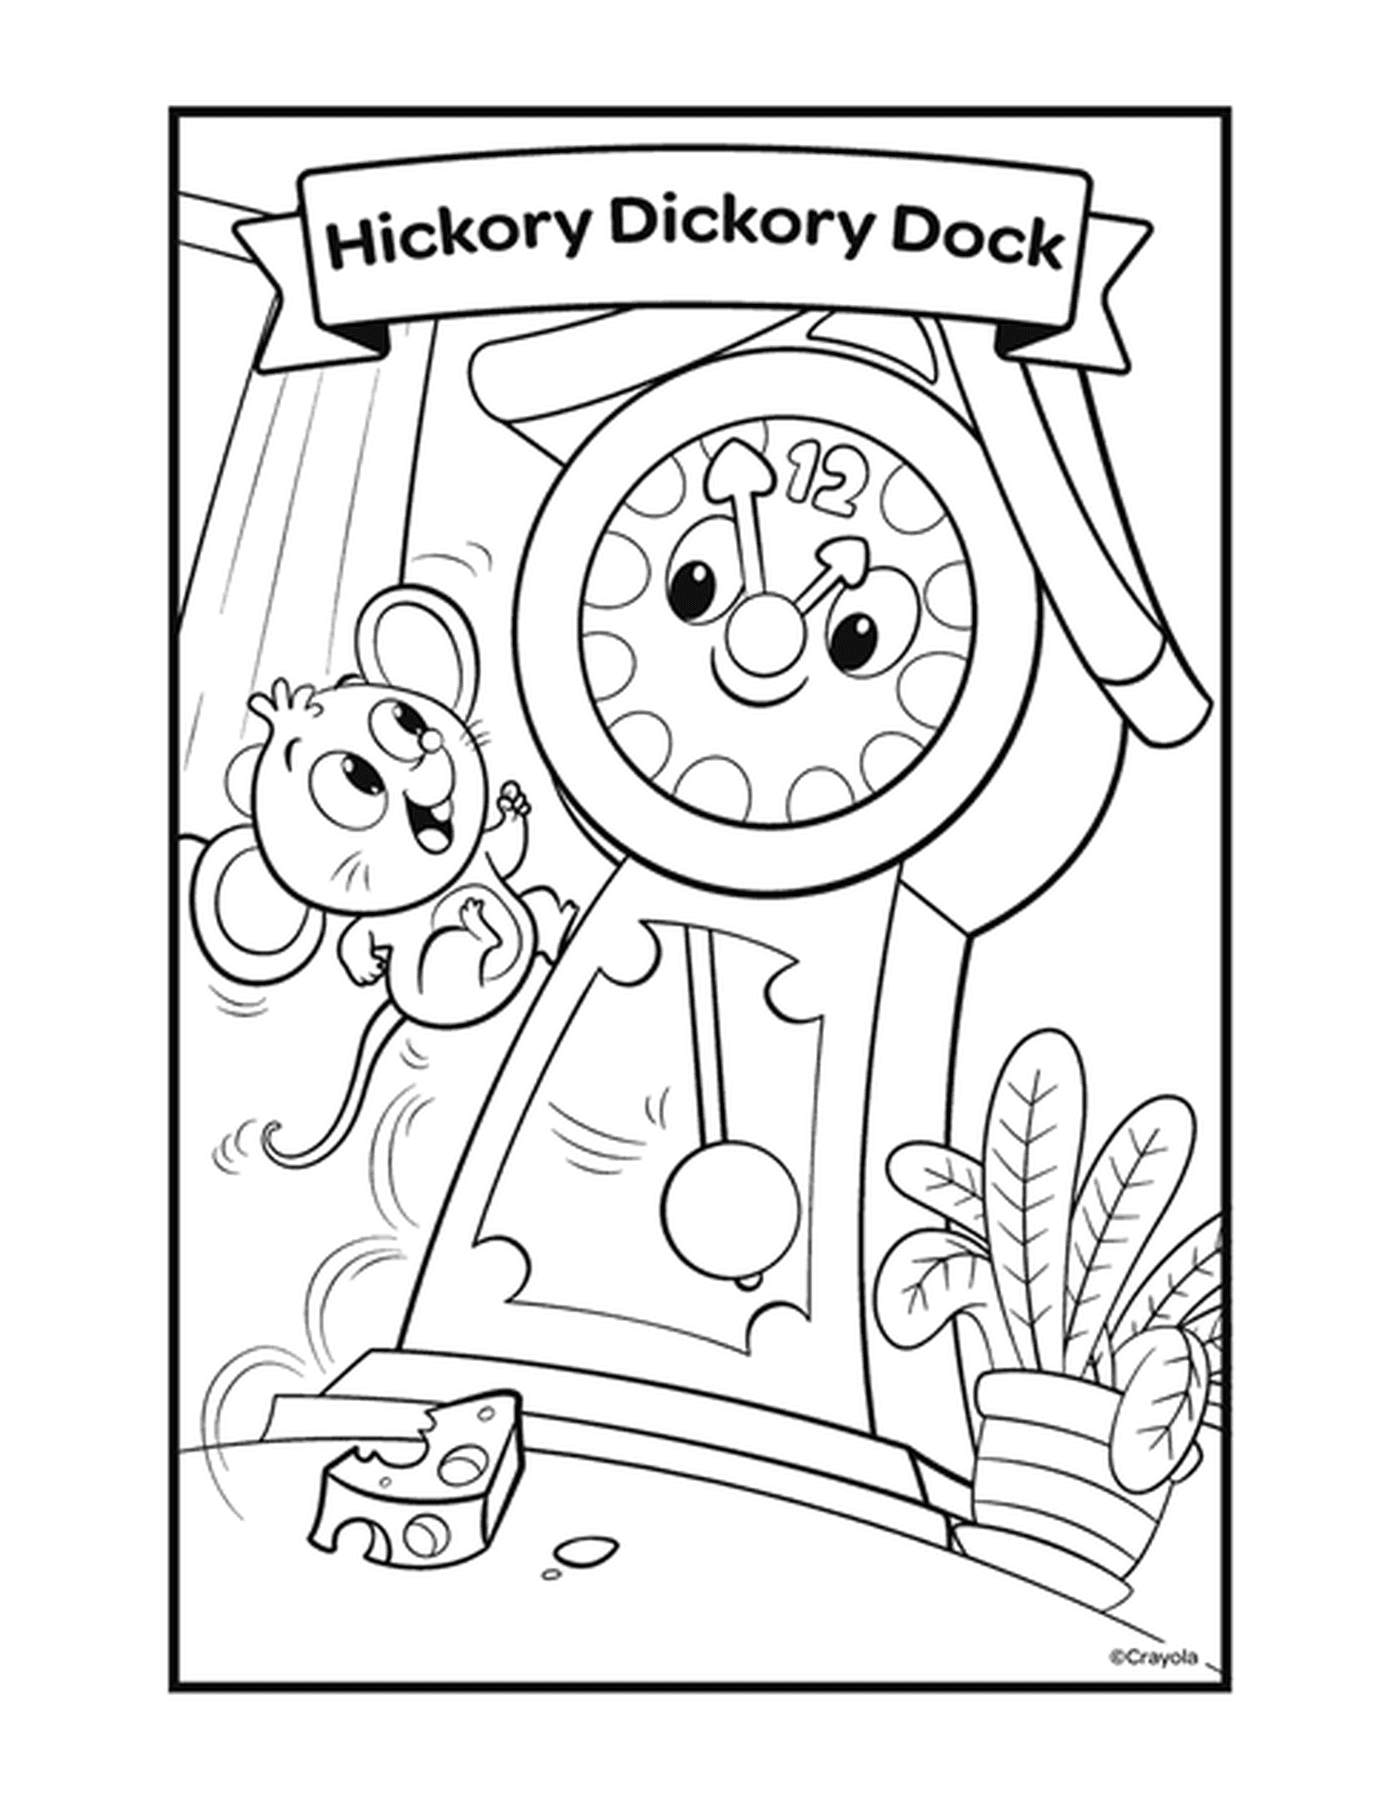  El Hickory Dickory Dock con un reloj y un ratón 